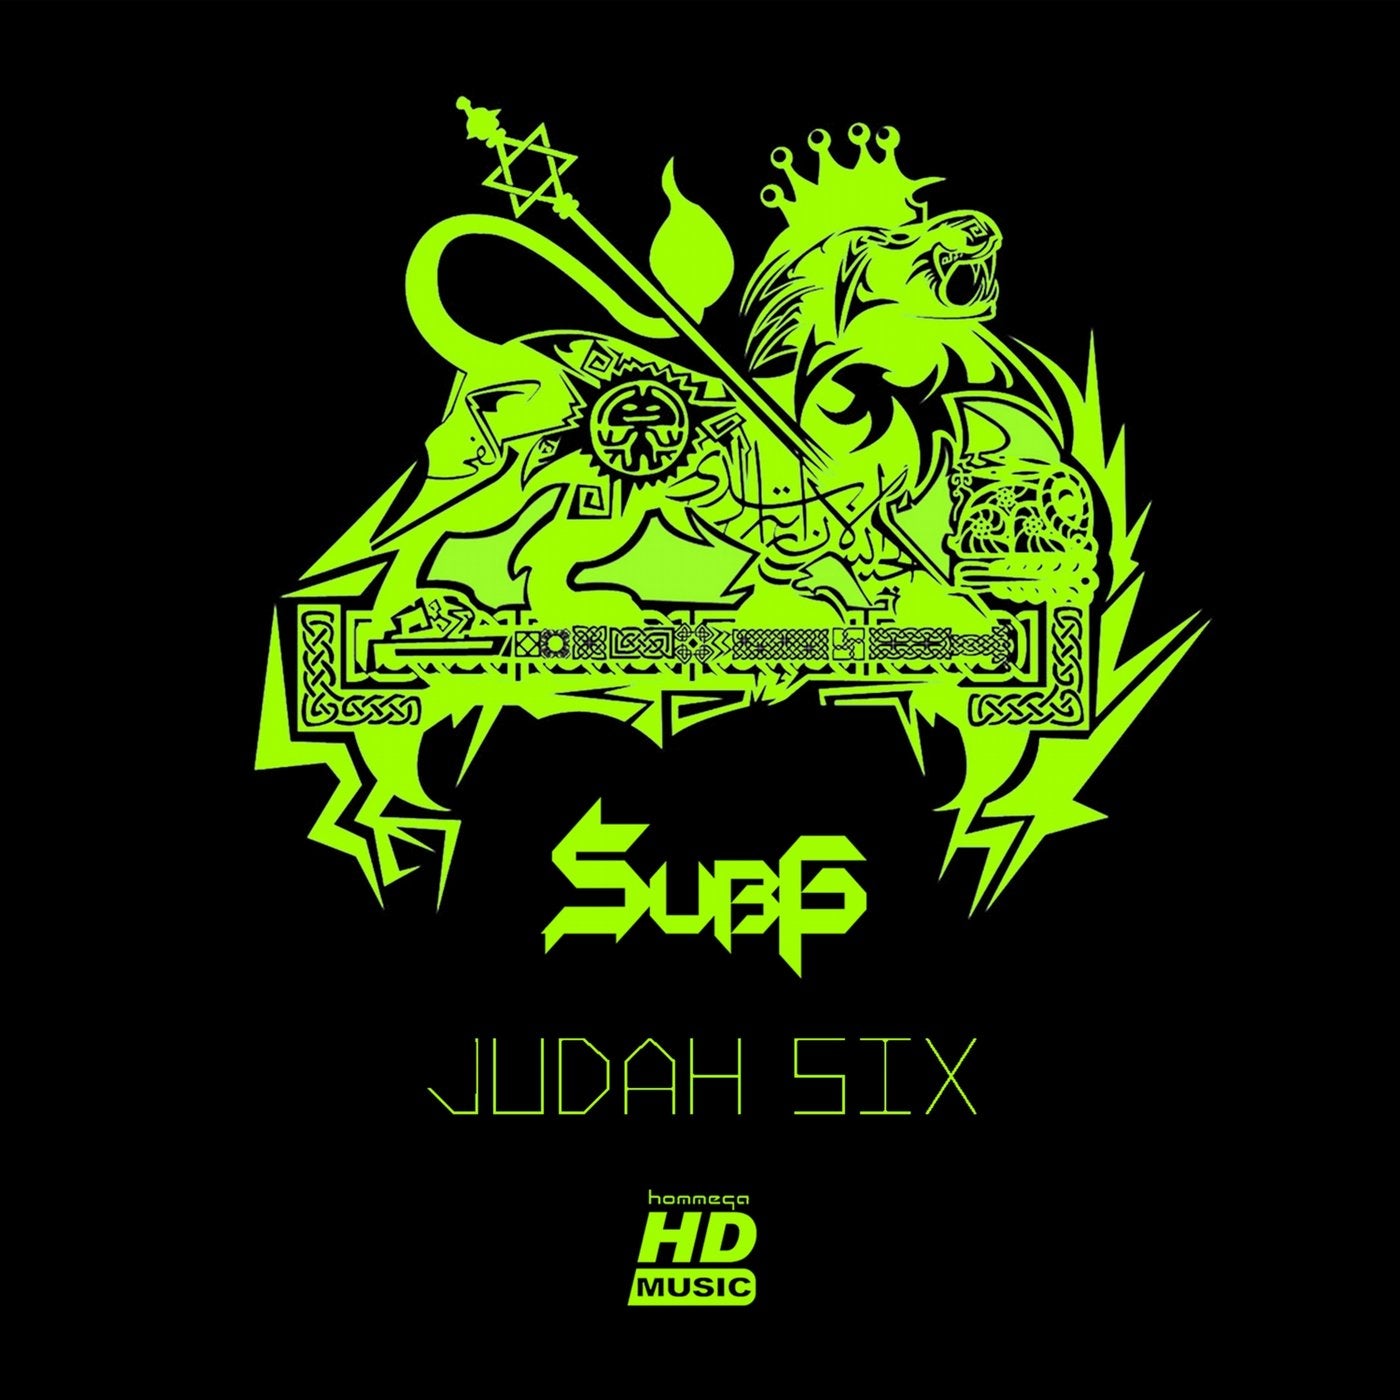 Judah Six